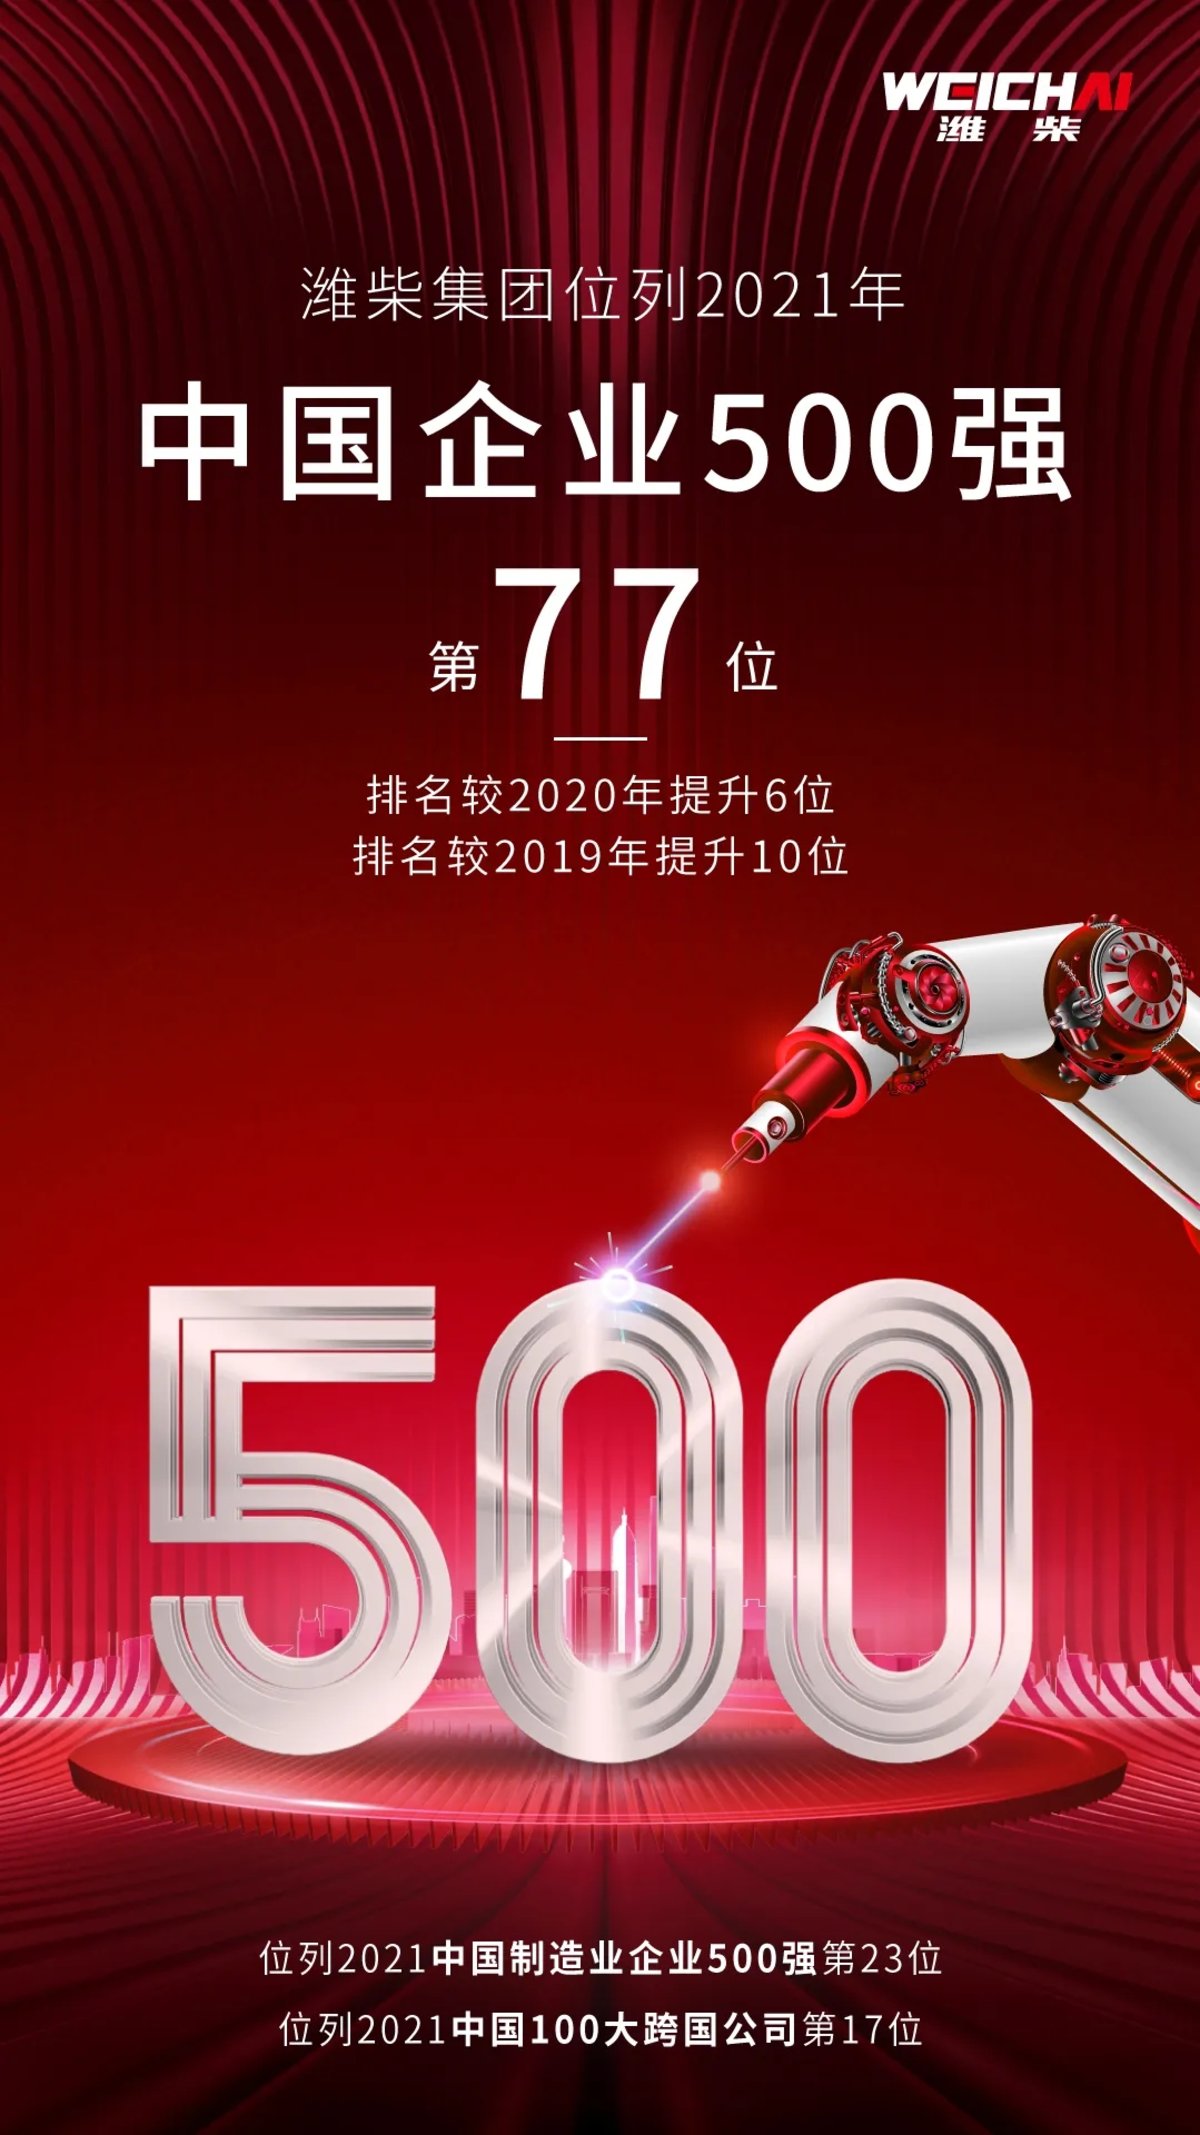 潍柴集团位列2021中国企业500强第77位